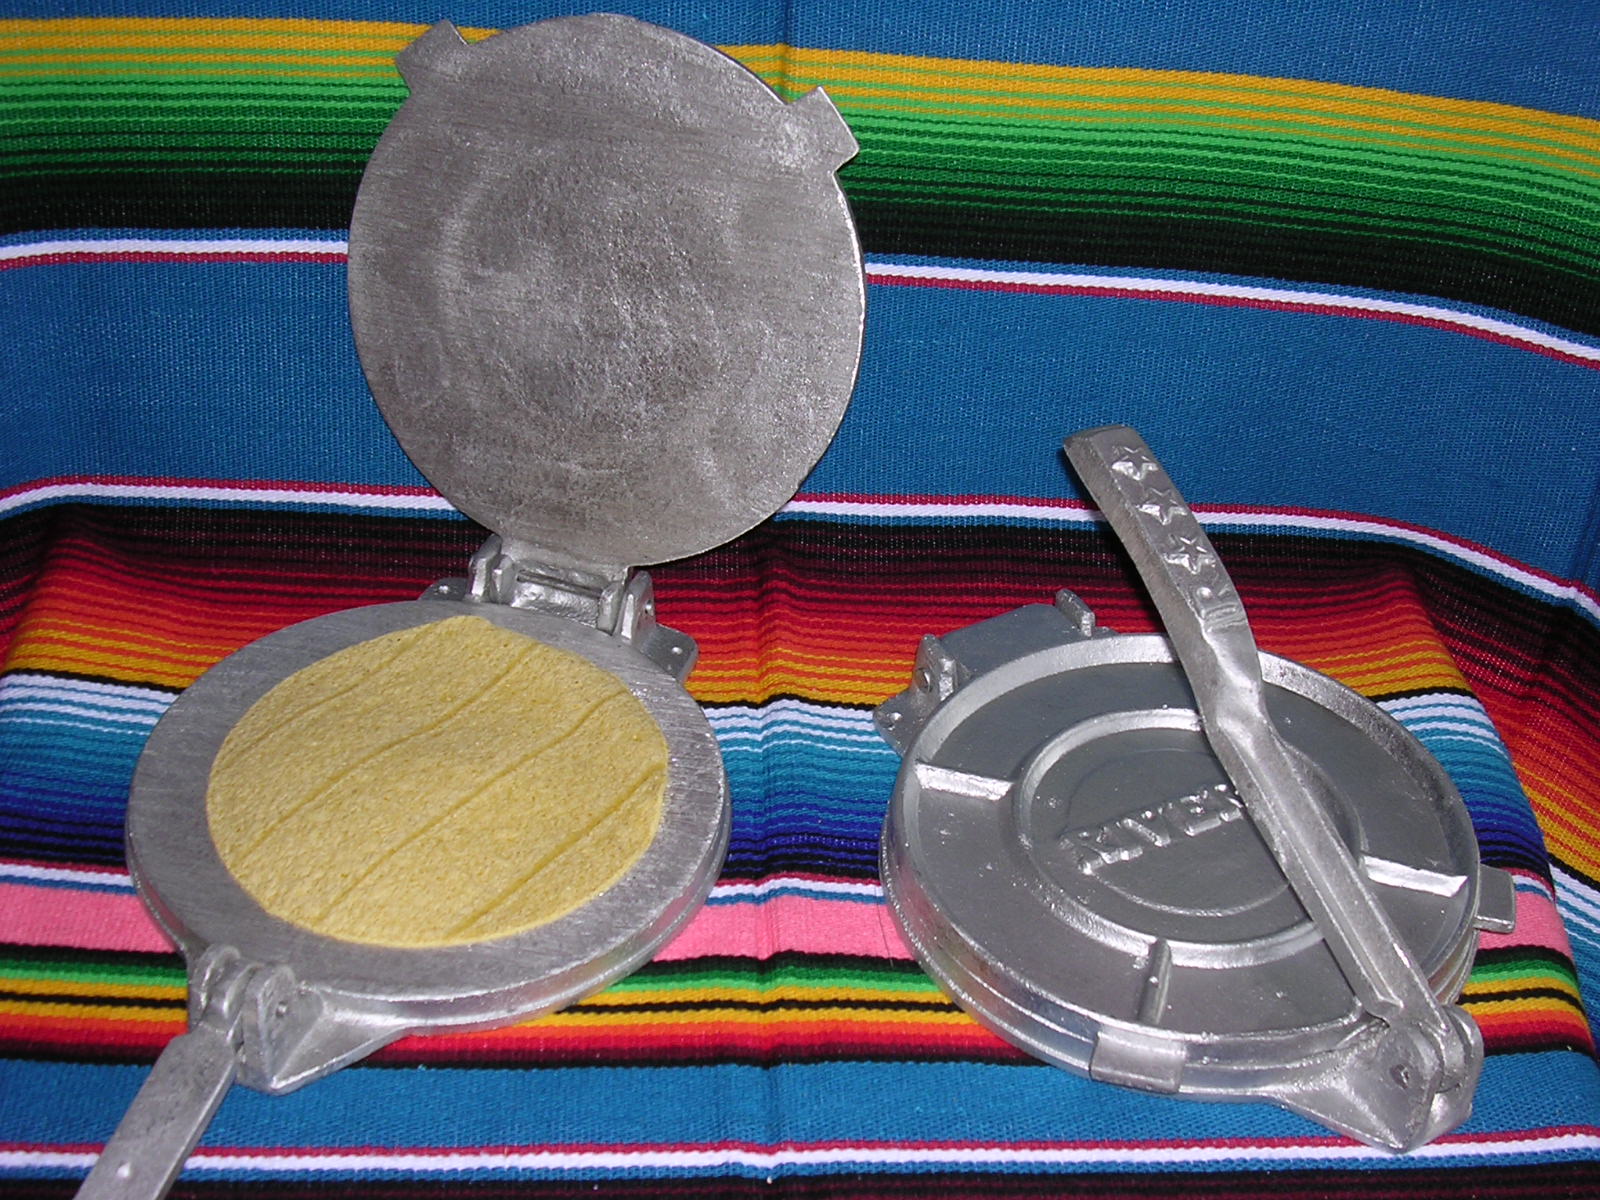 Tortilla de Maíz Mexicana - La tortillera o prensa para hacer tortillas es  un utensilio muy común y de gran utilidad en los hogares mexicanos.  Elaborar y dar forma a las tortillas